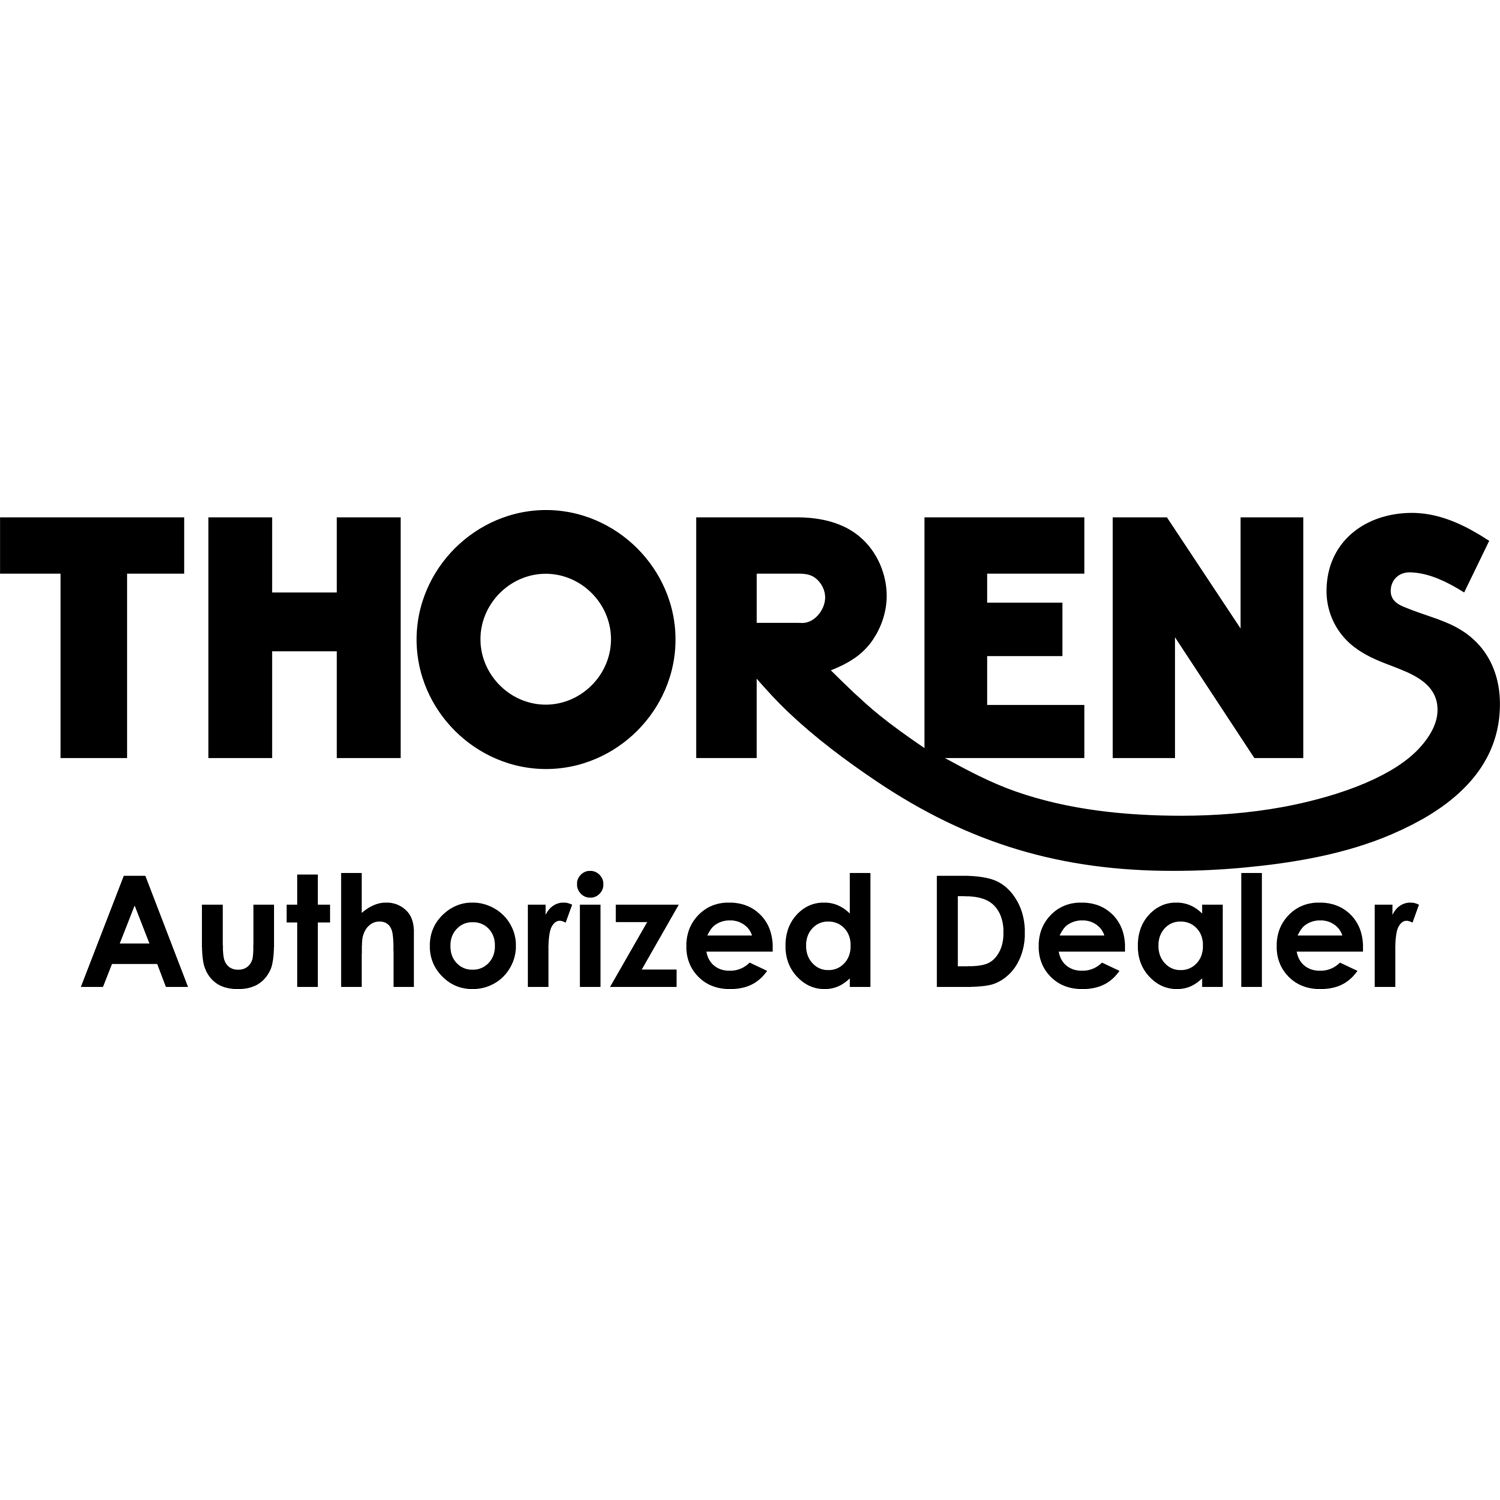 THORENS Dealer